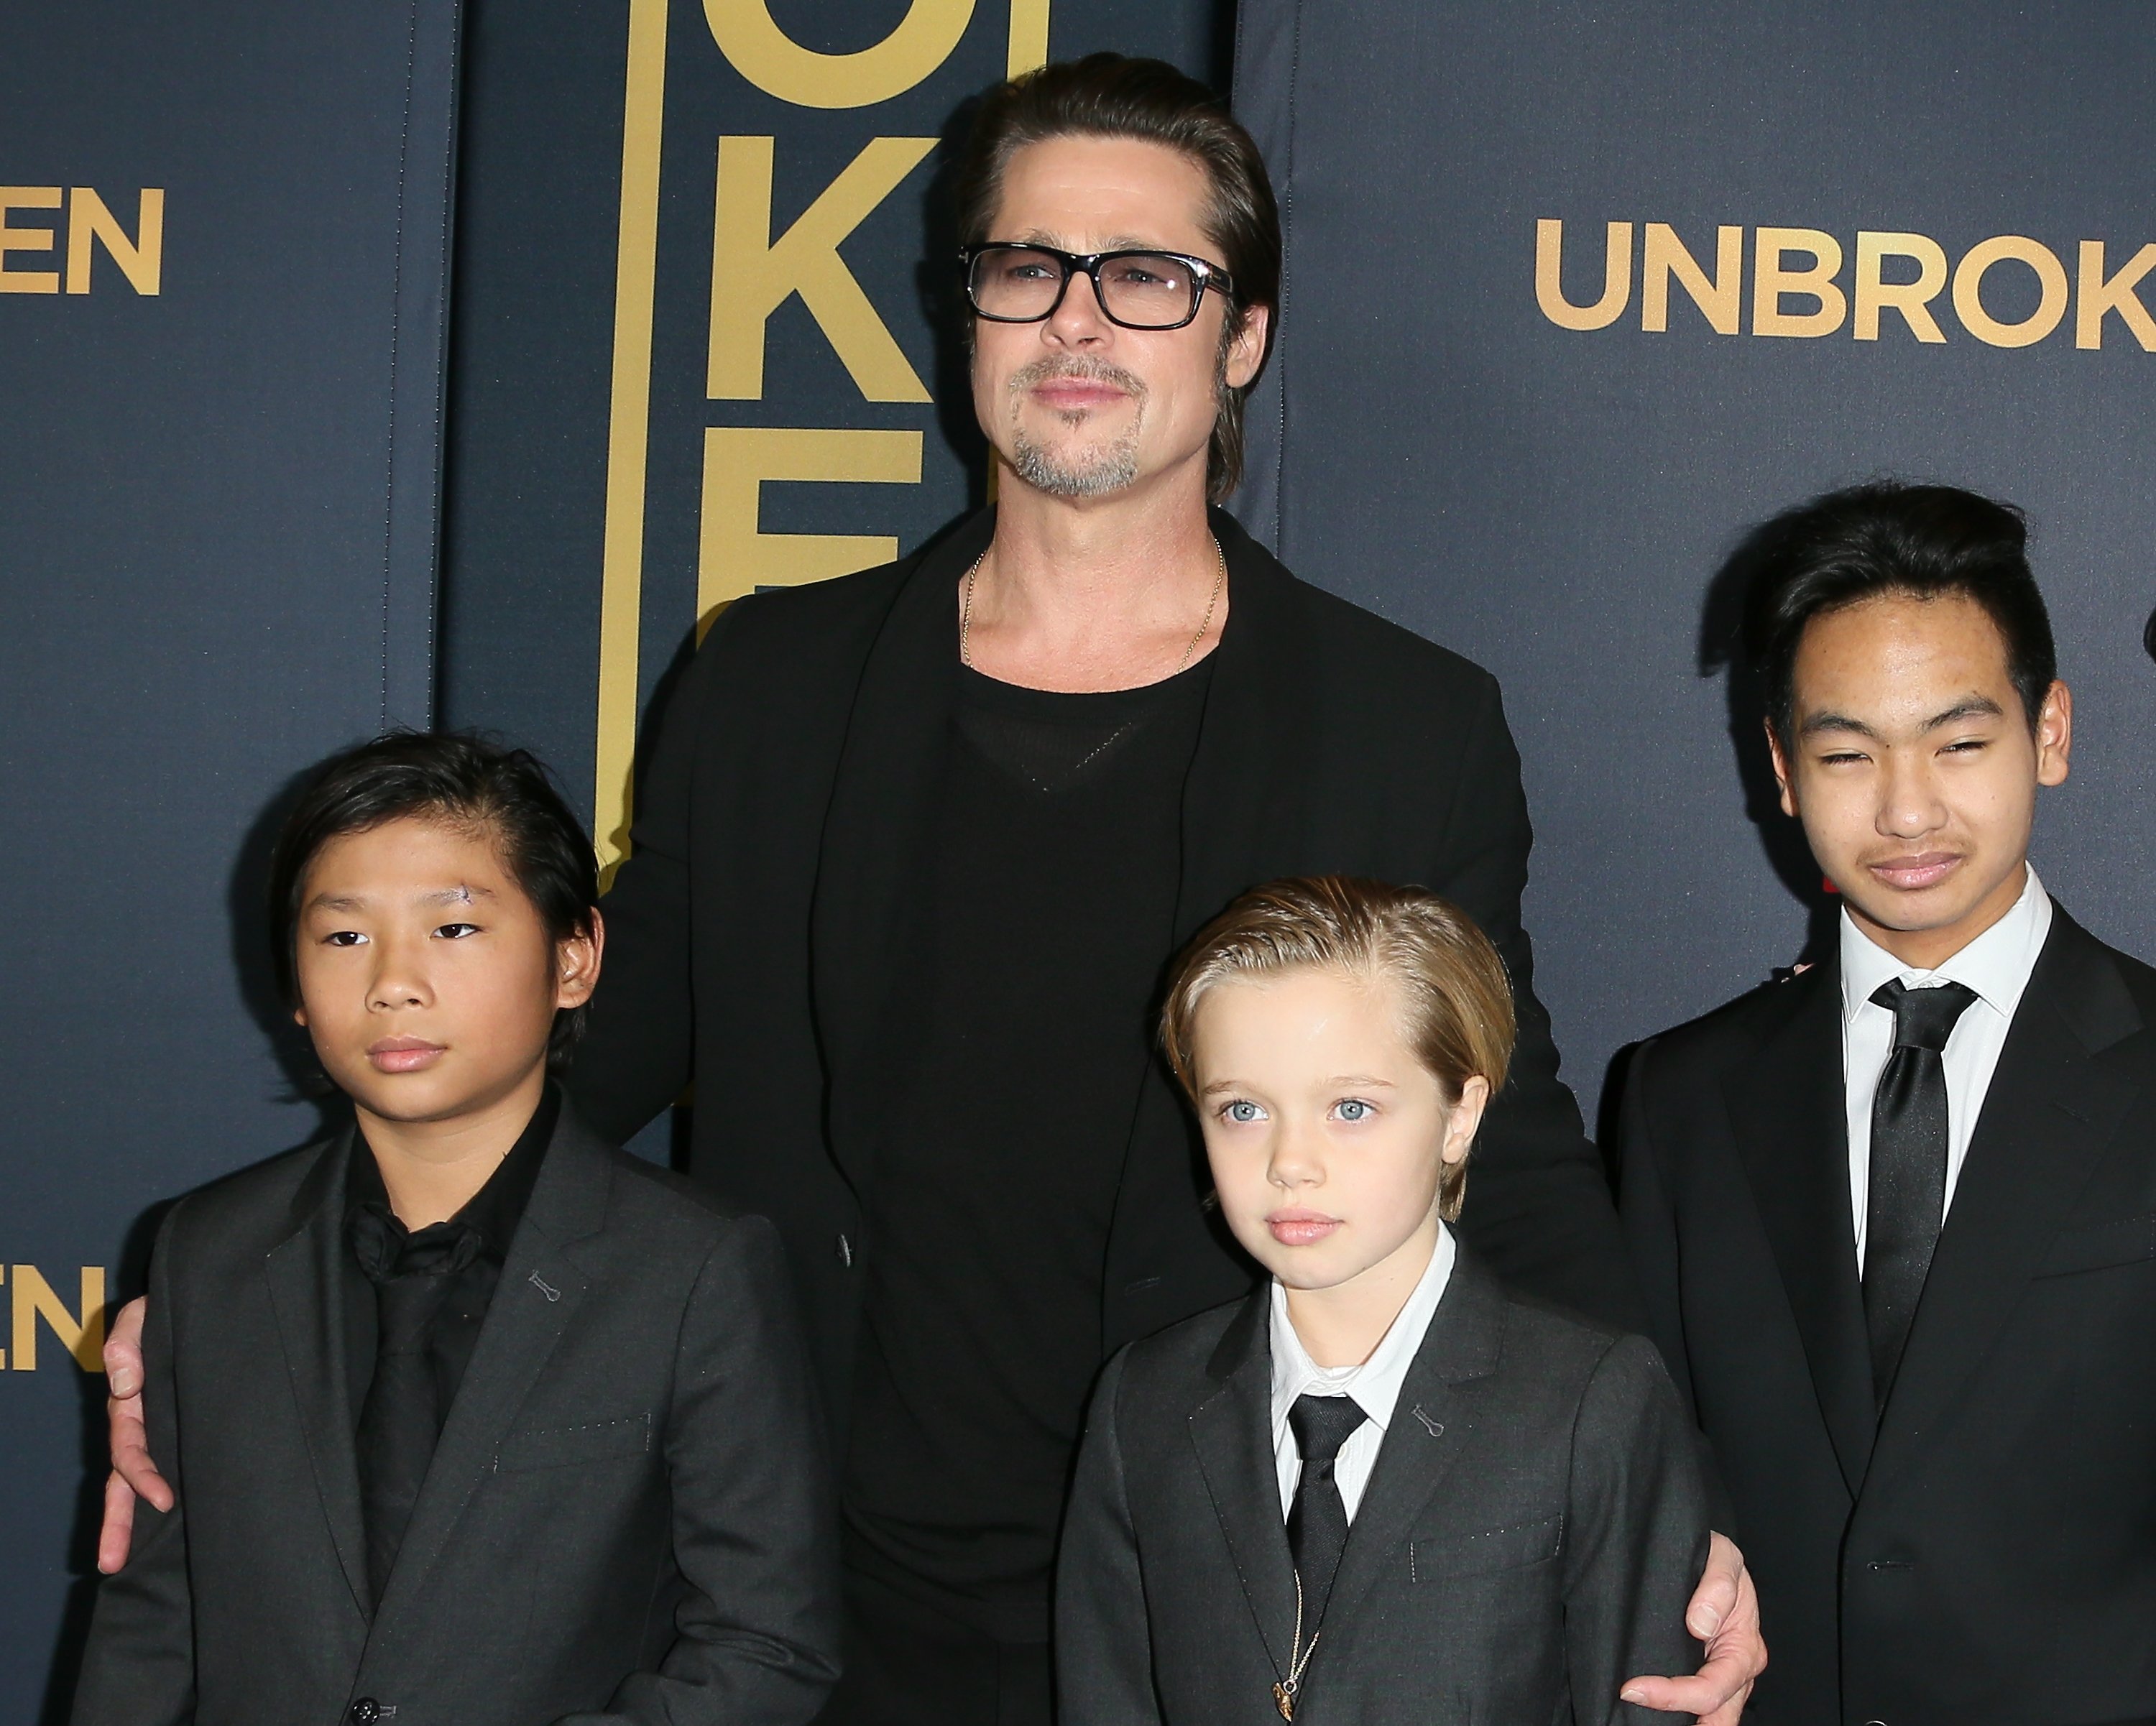 Brad Pitt avec ses enfants Pax, Shiloh et Maddox Jolie-Pitt lors de la première de "Invincible" à Los Angeles le 15 décembre 2014 | Source : Getty Images